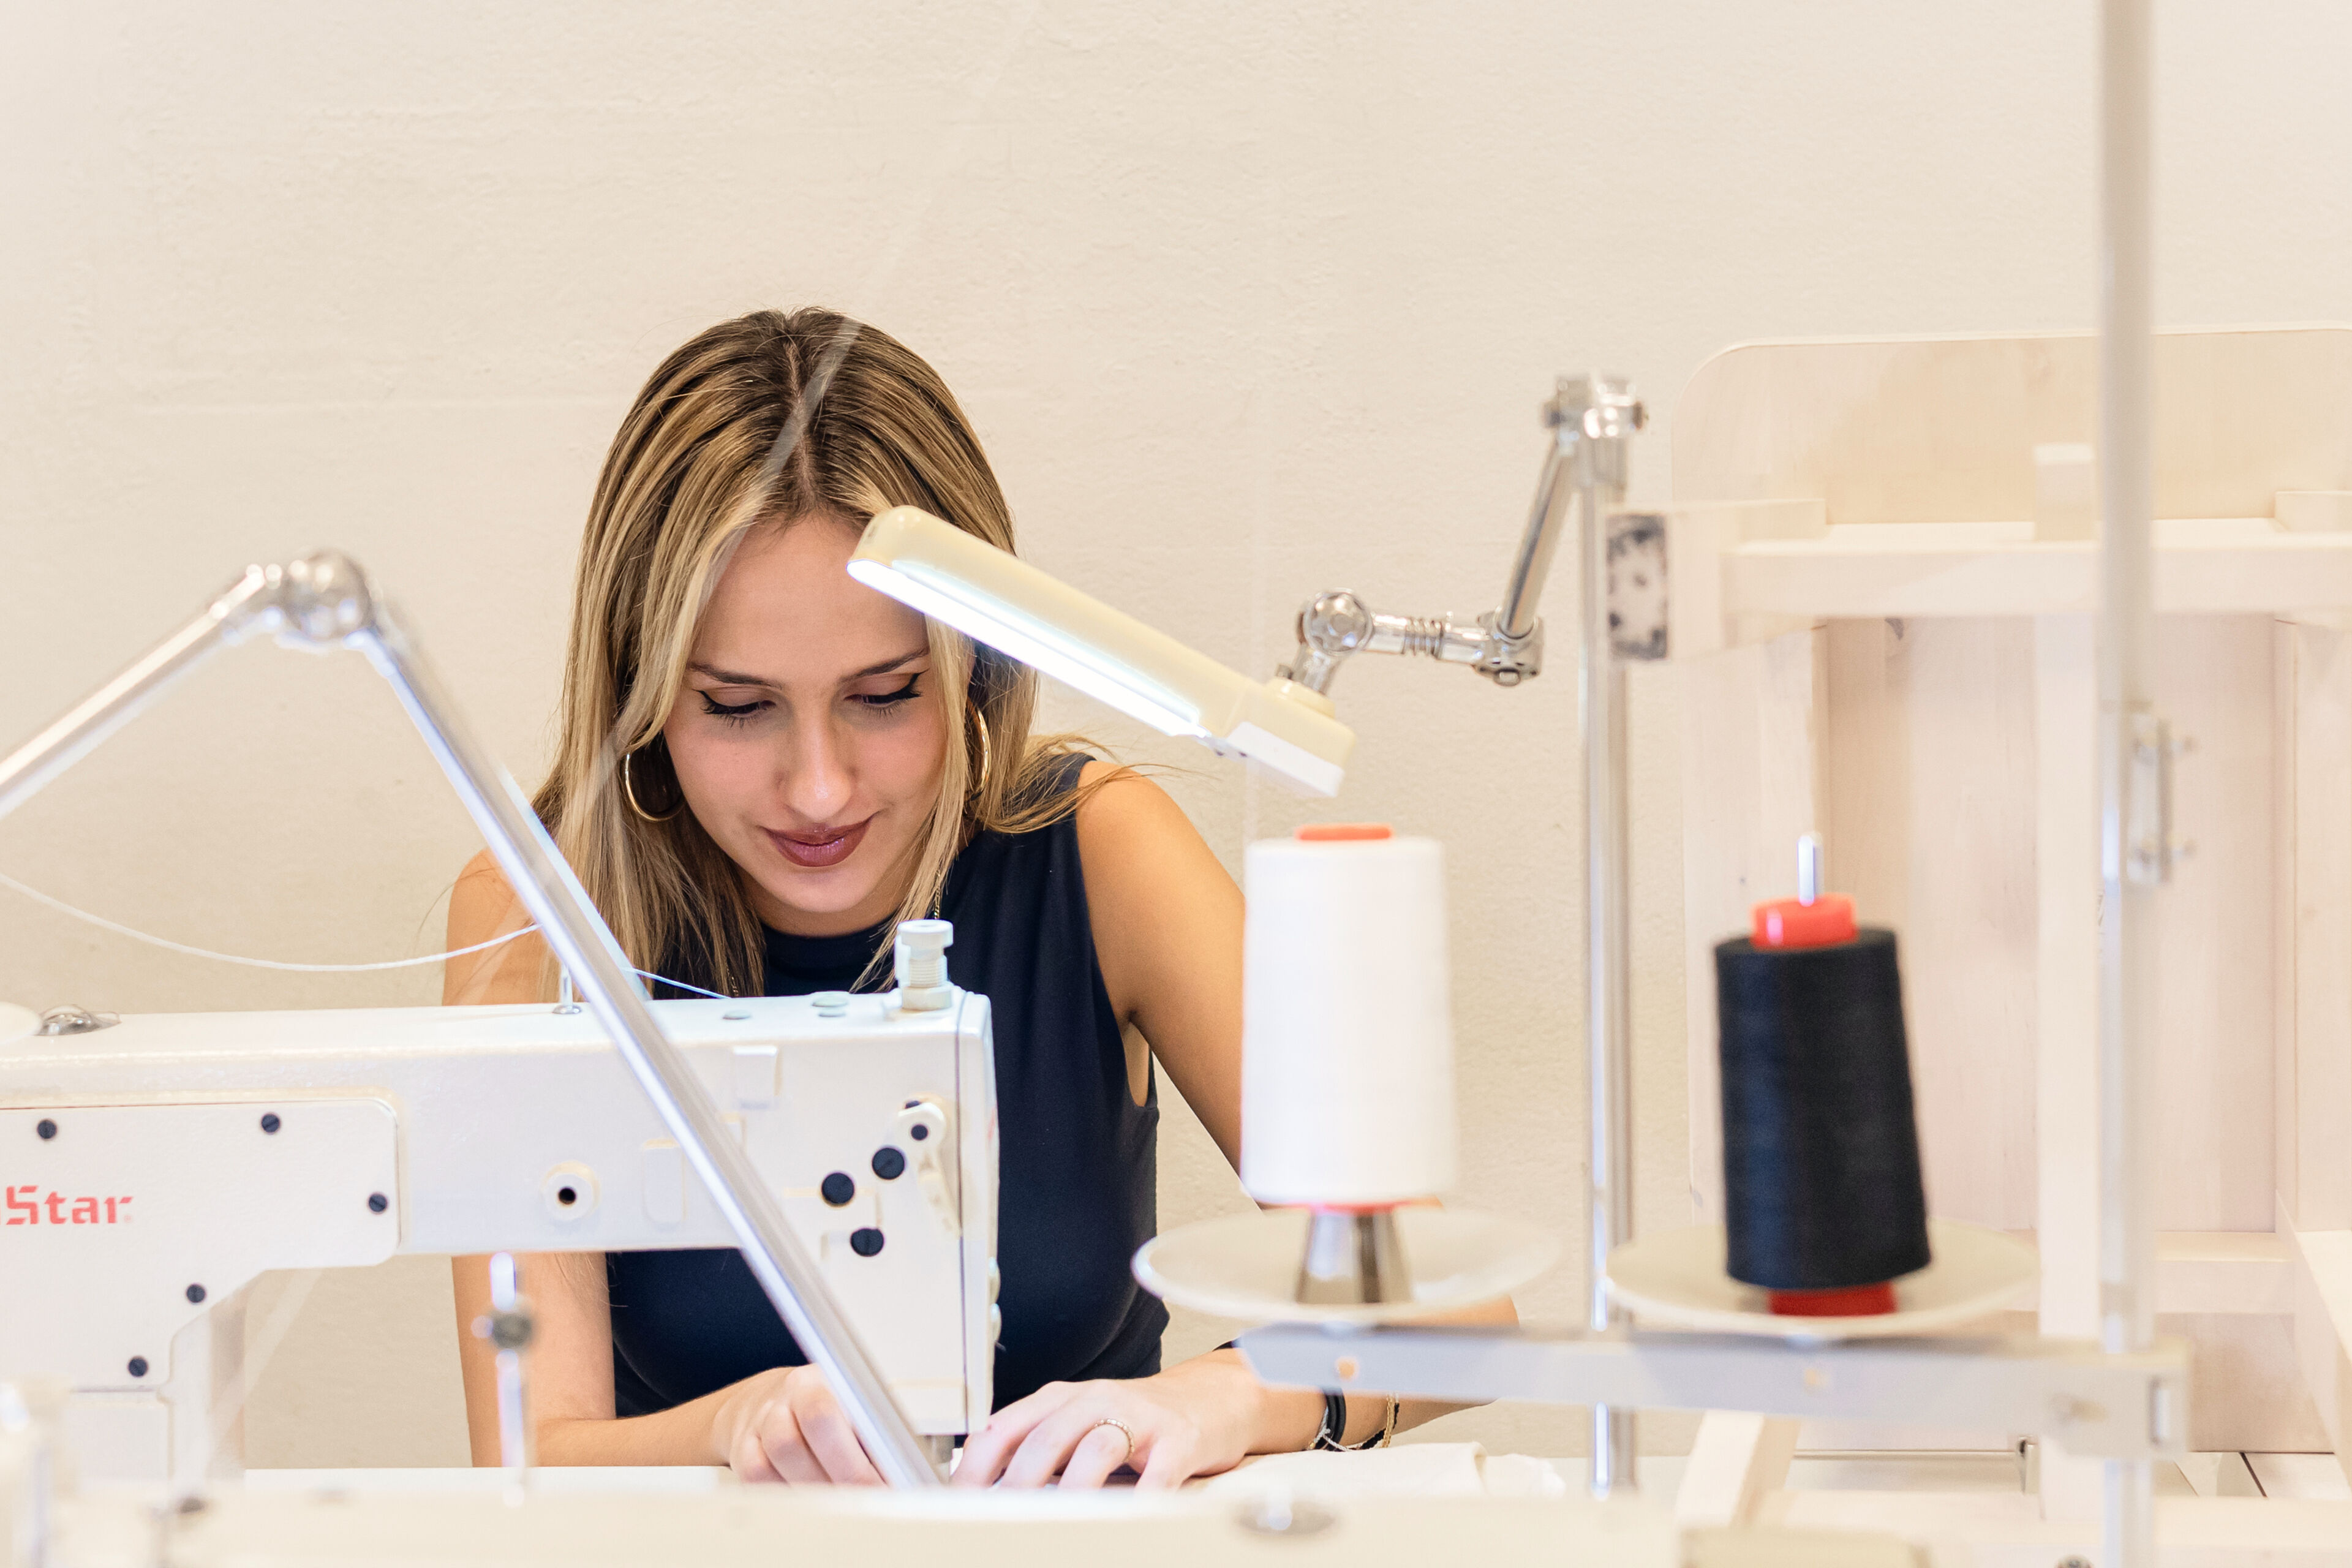 Una dona utilitzant atentament una màquina de cosir professional, amb carretells de fil i una llum de tasca a l'espai de treball.

